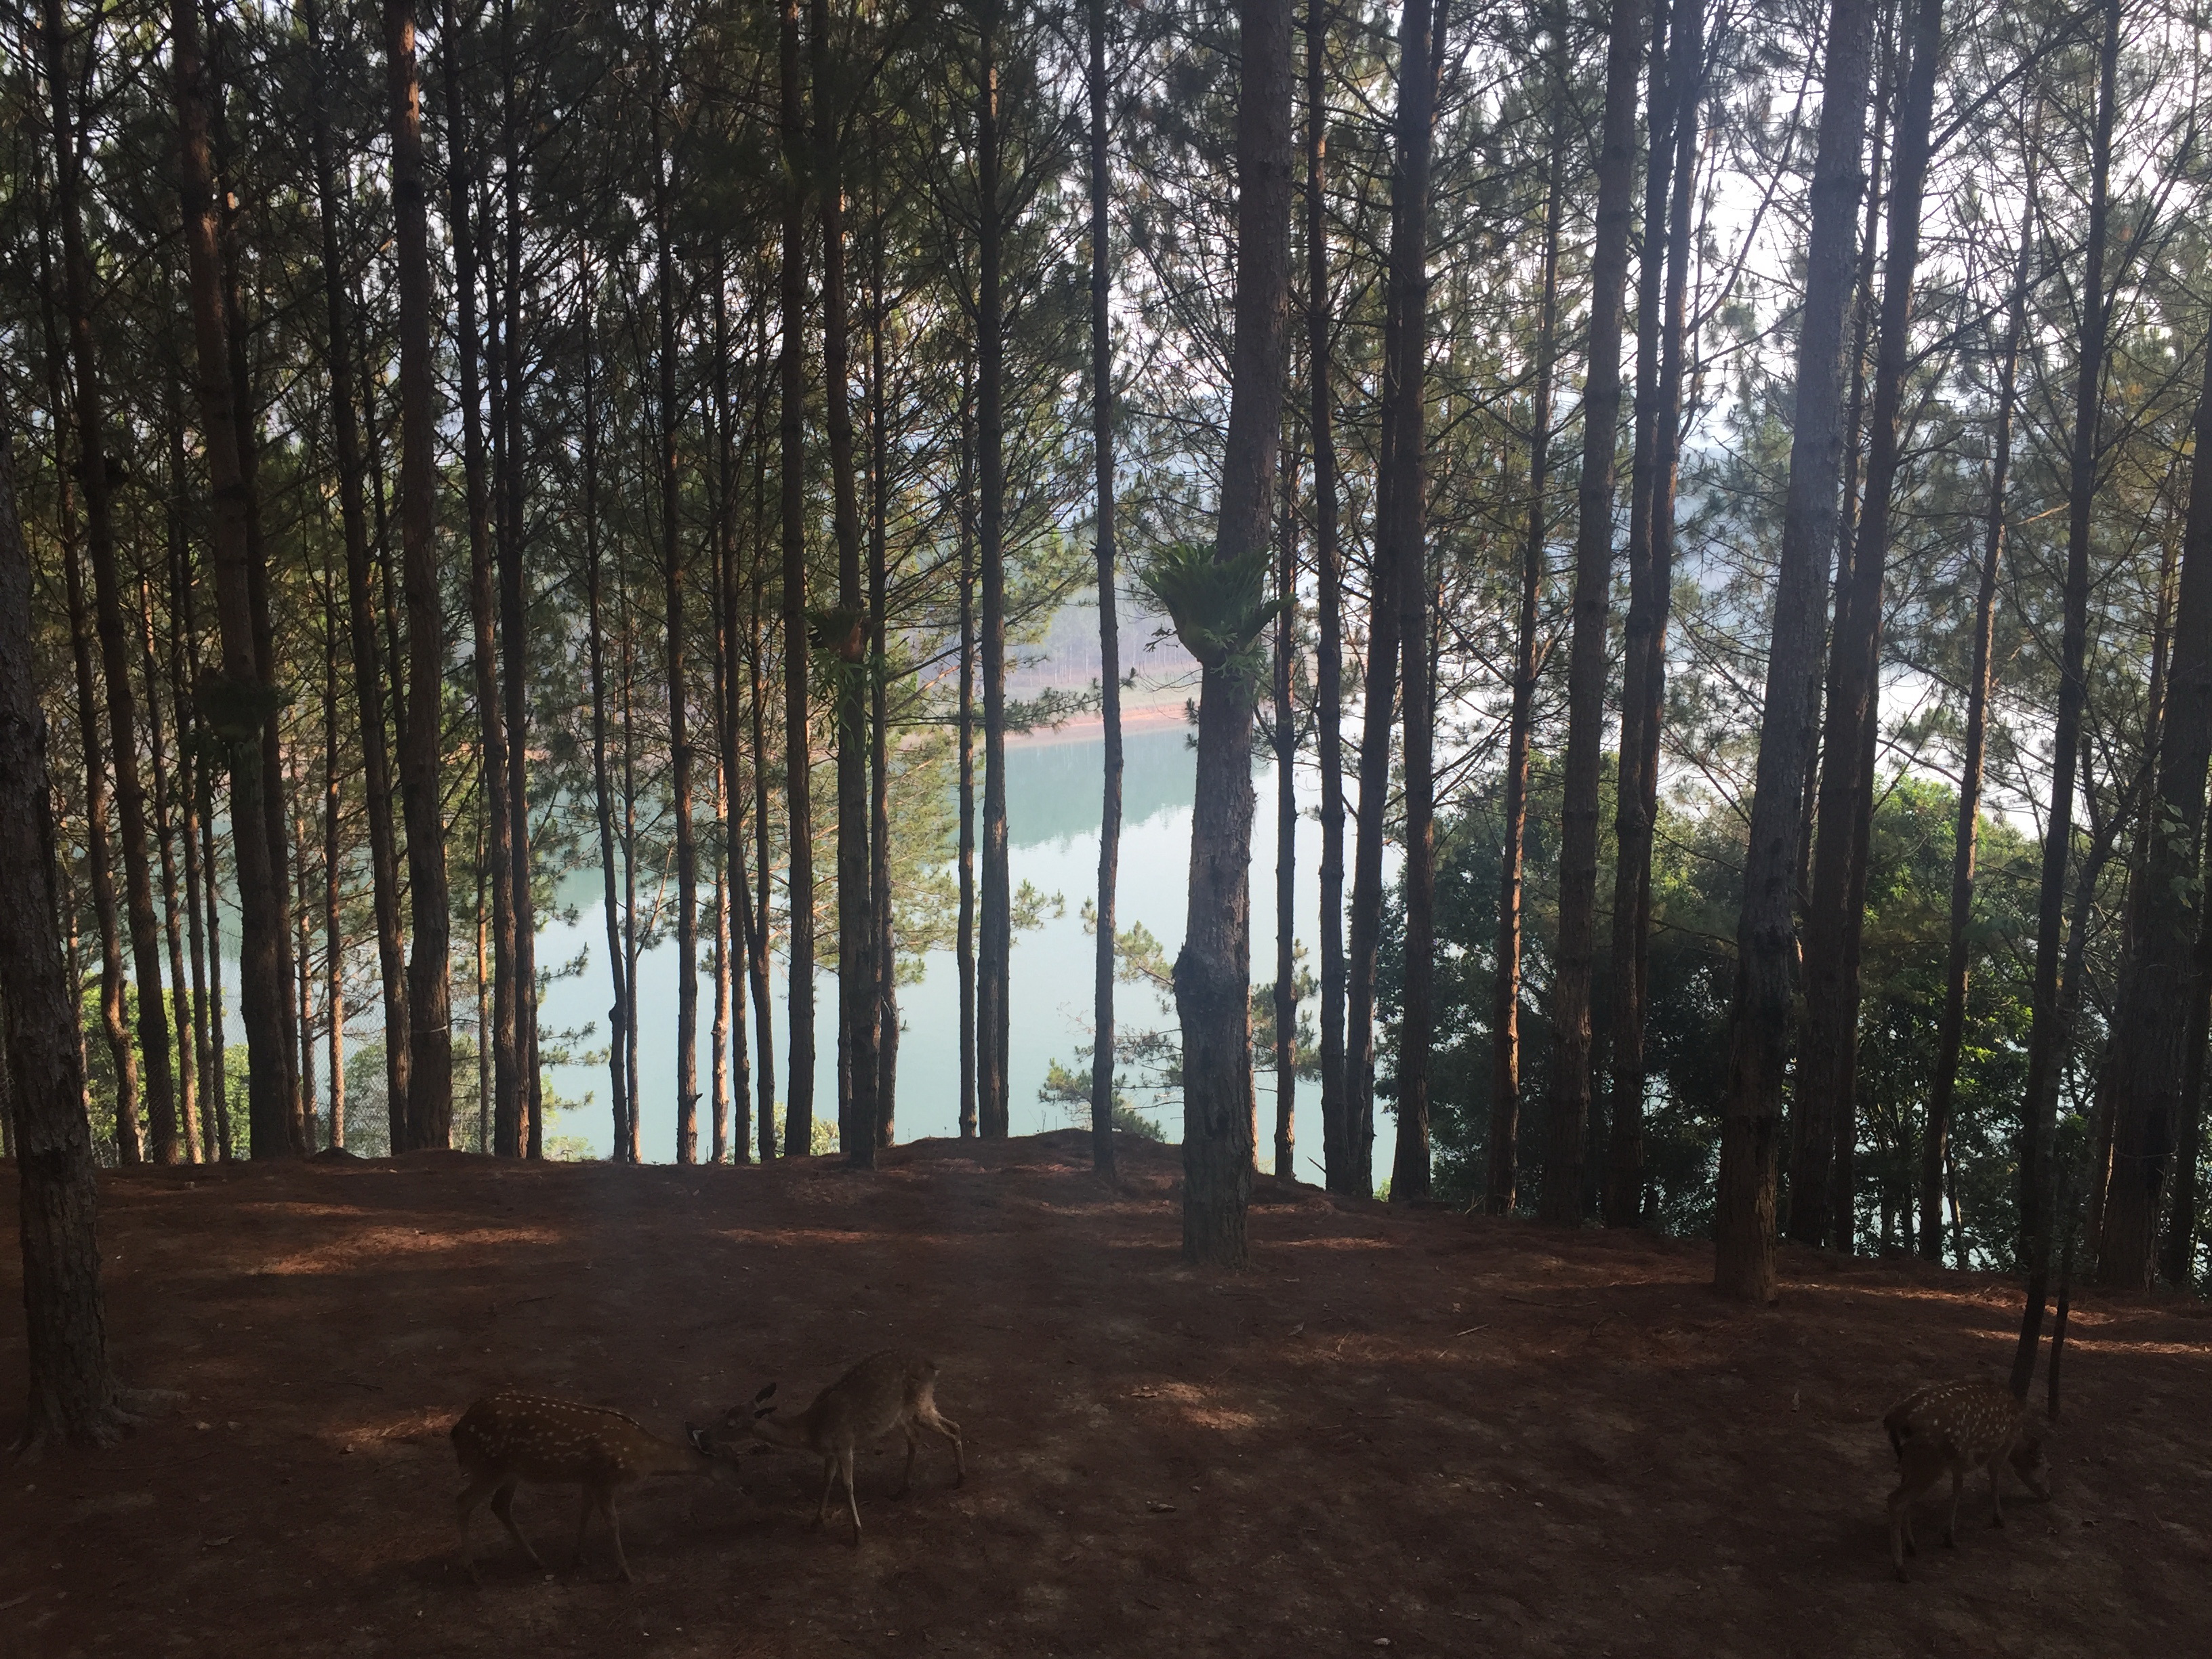 달랏 에덴제 리조트를 둘러싸고 있는 빽빽한 소나무숲과 그 사이를 노닐고 있는 노루들